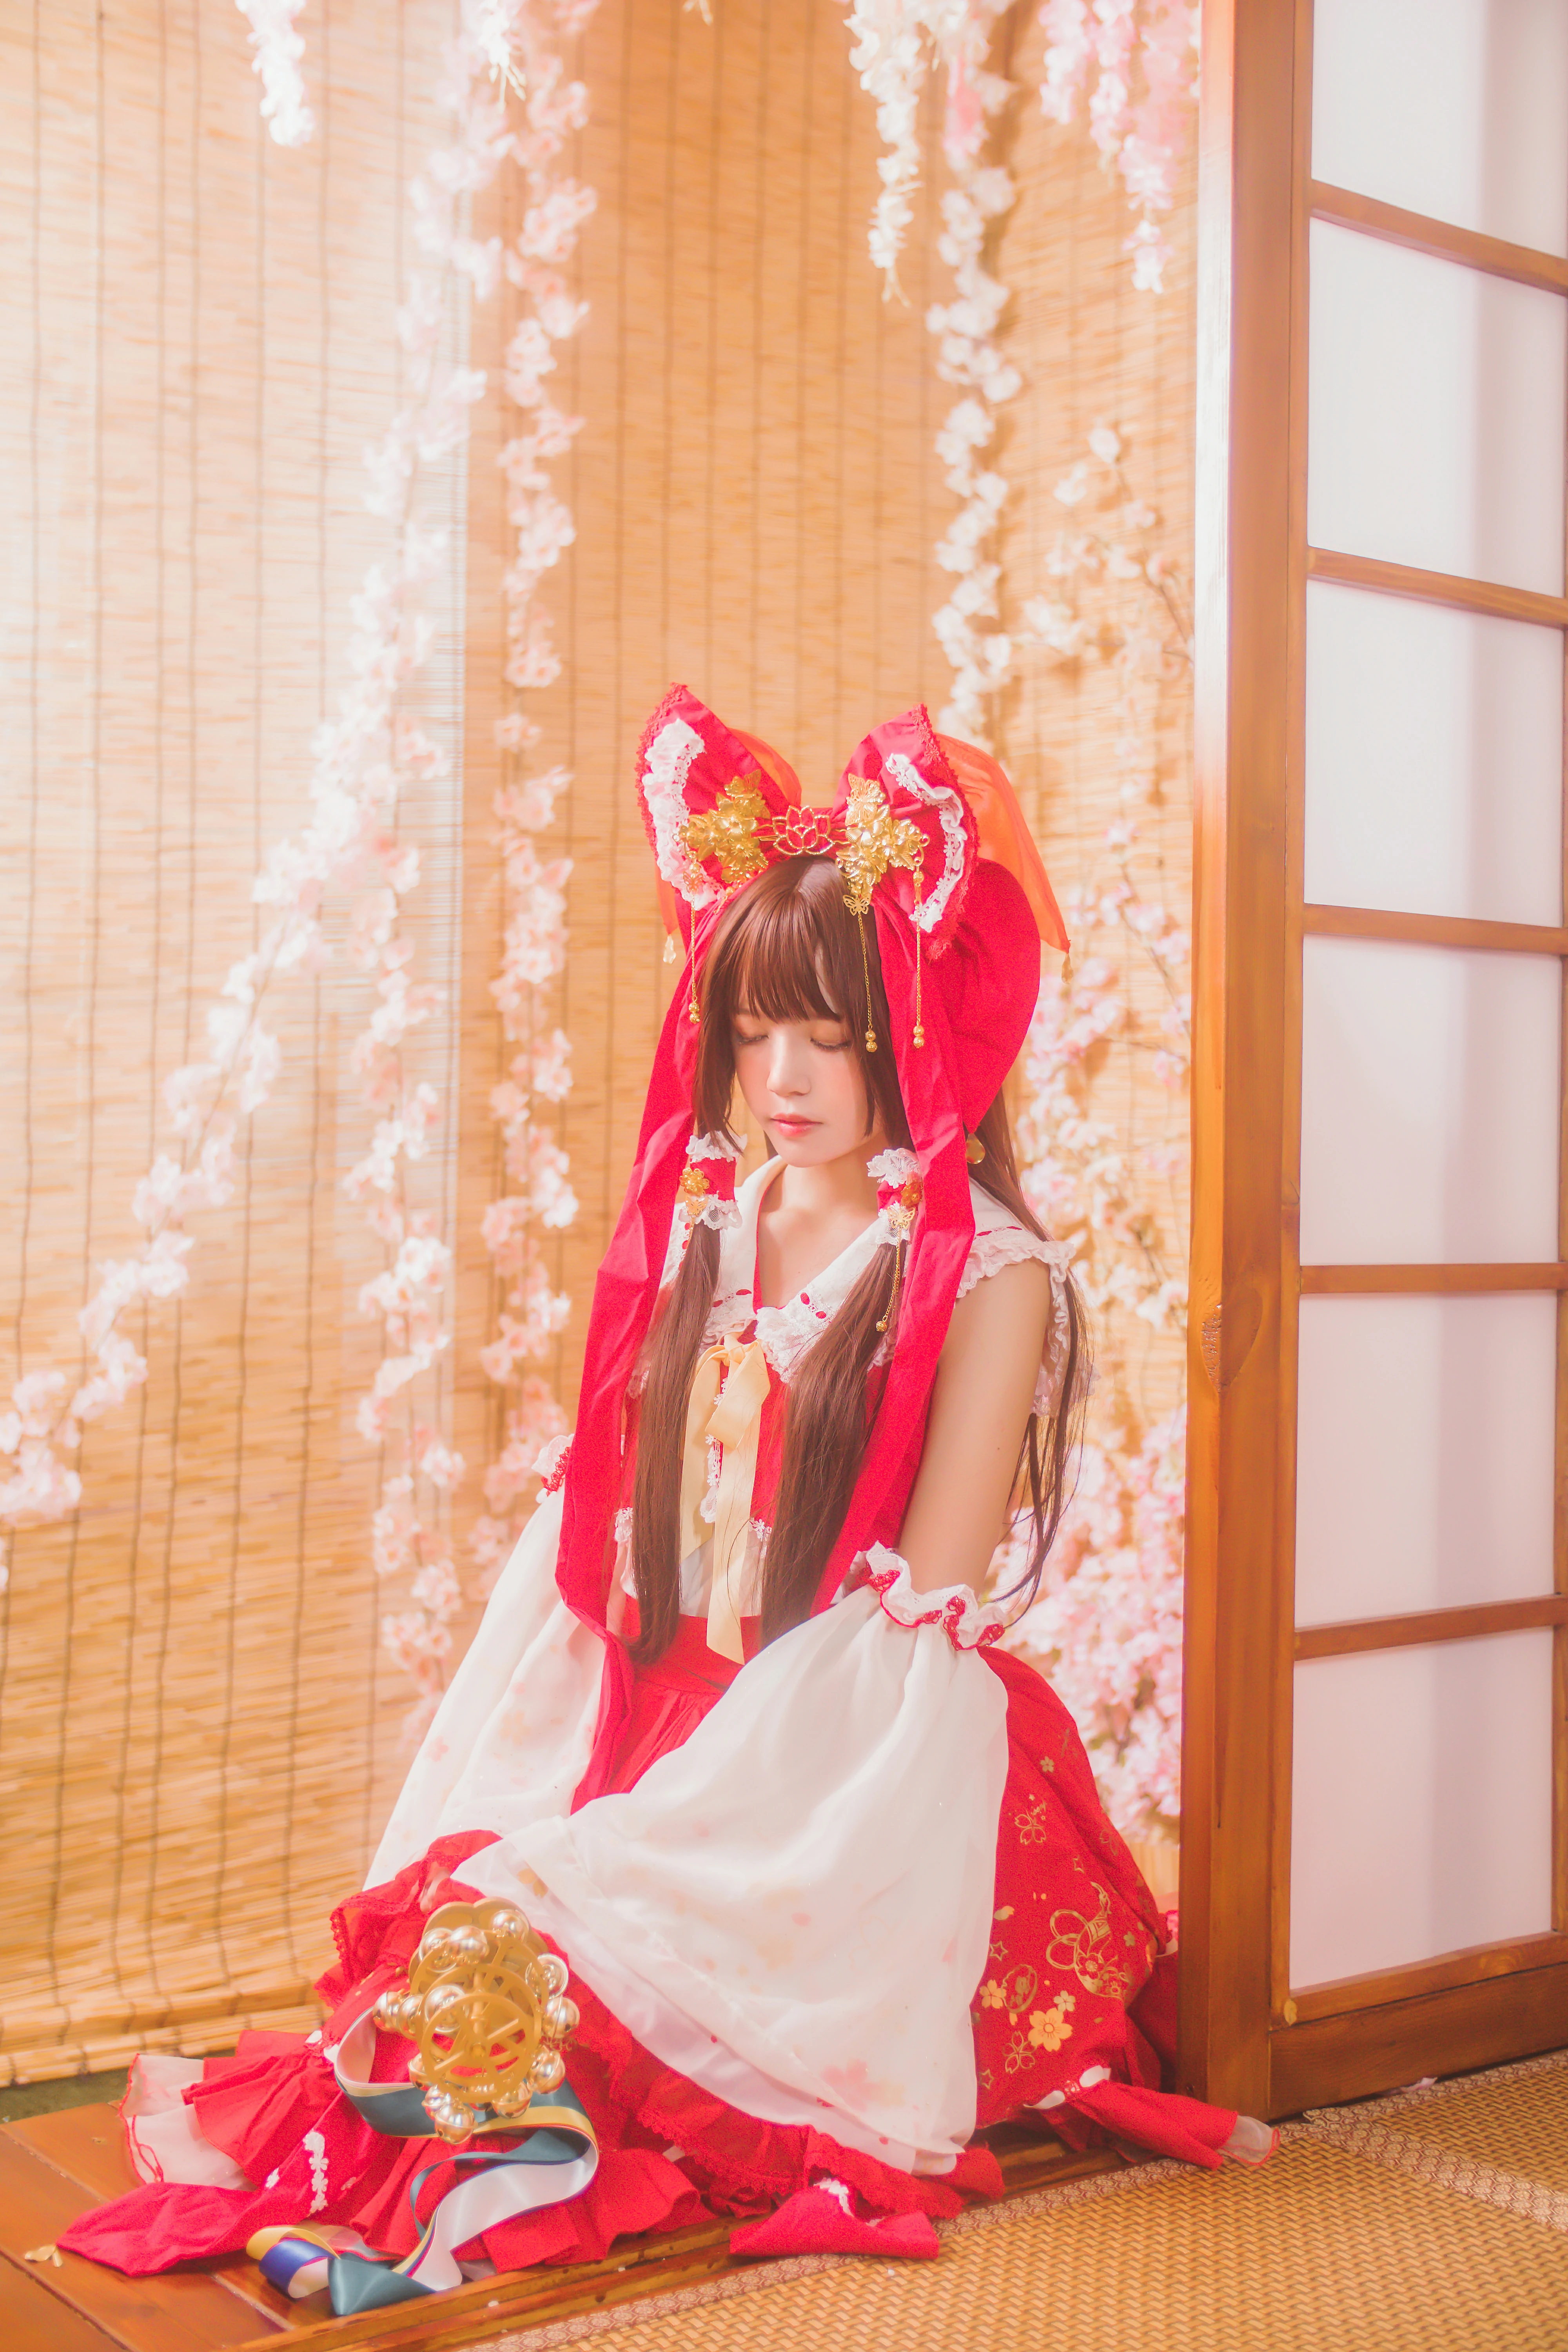 清纯少女小萝莉 桜桃喵 红色连身制服裙 和风写真,0021